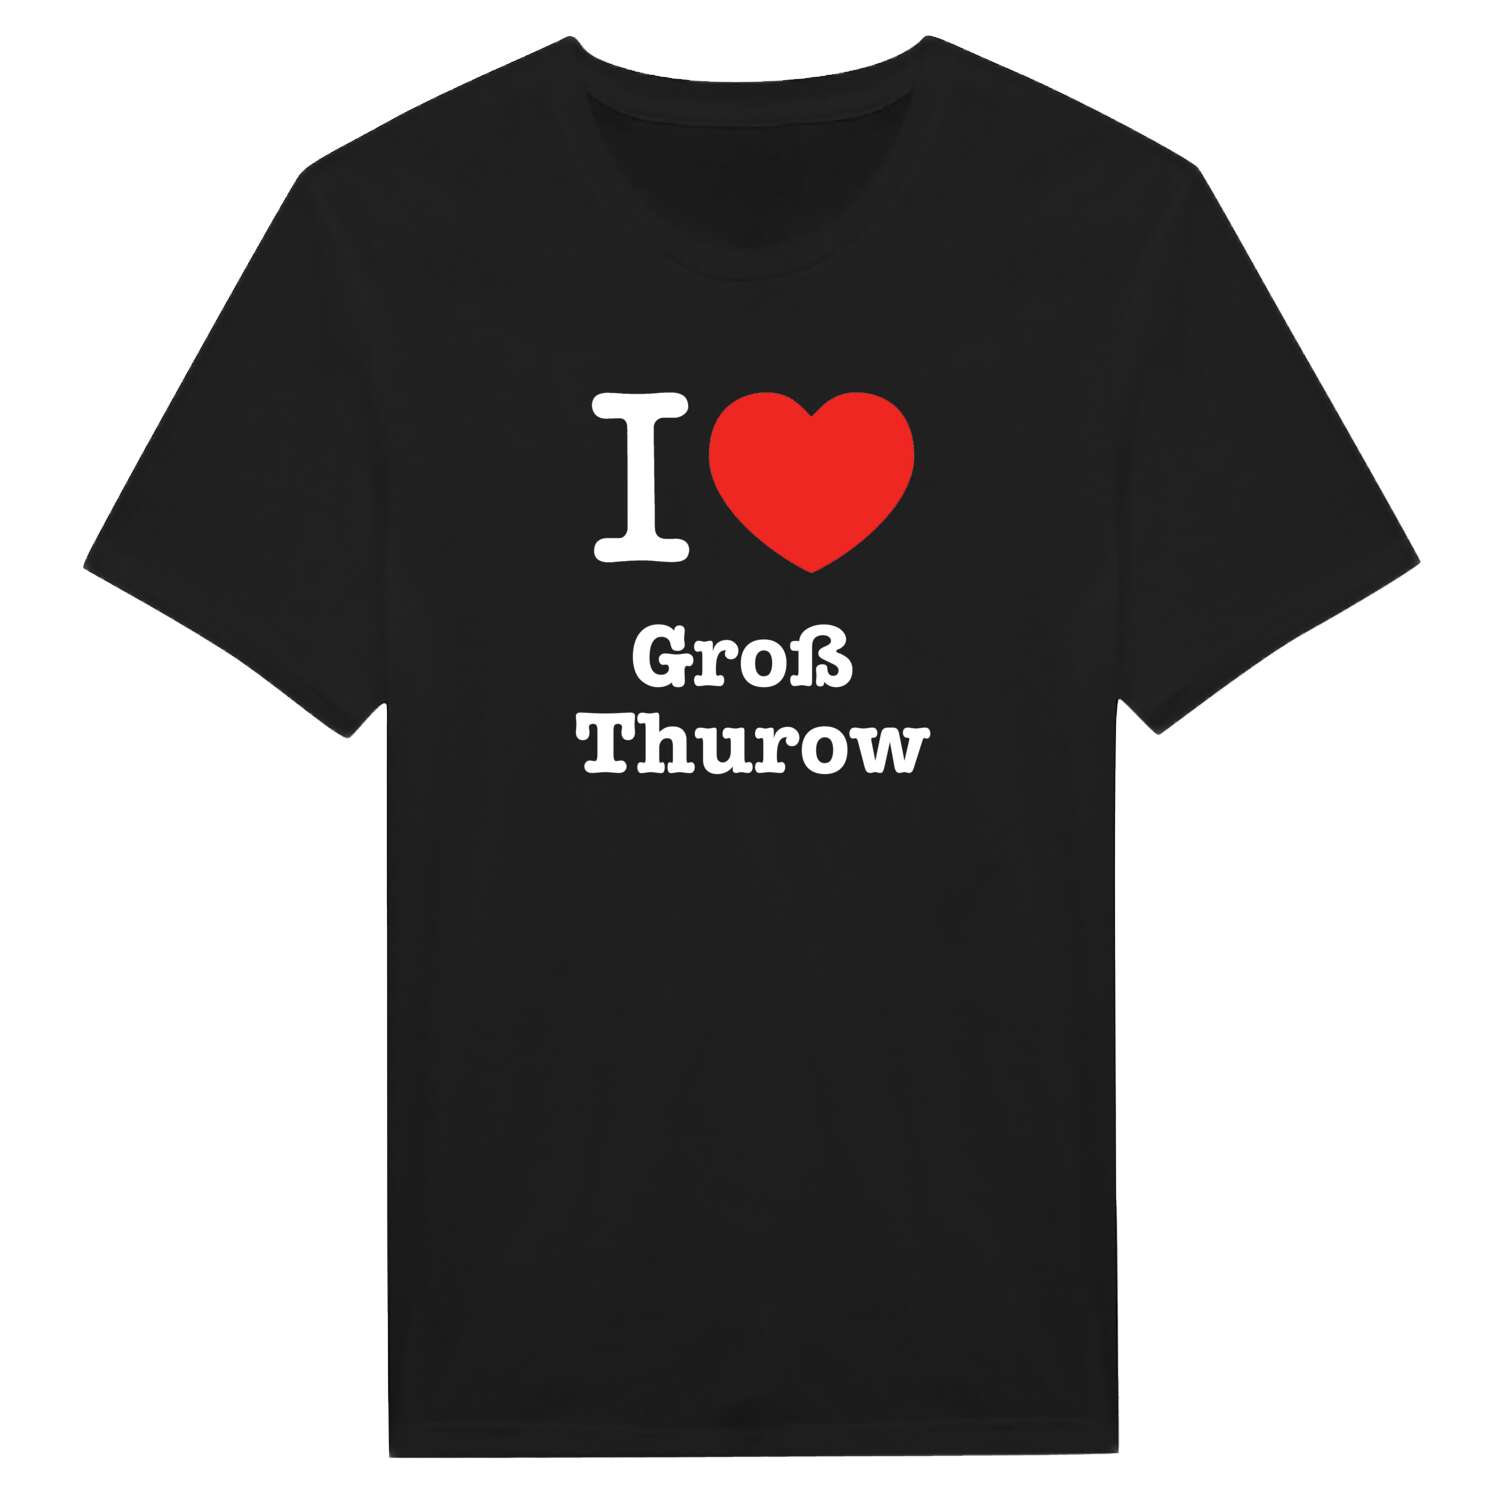 Groß Thurow T-Shirt »I love«